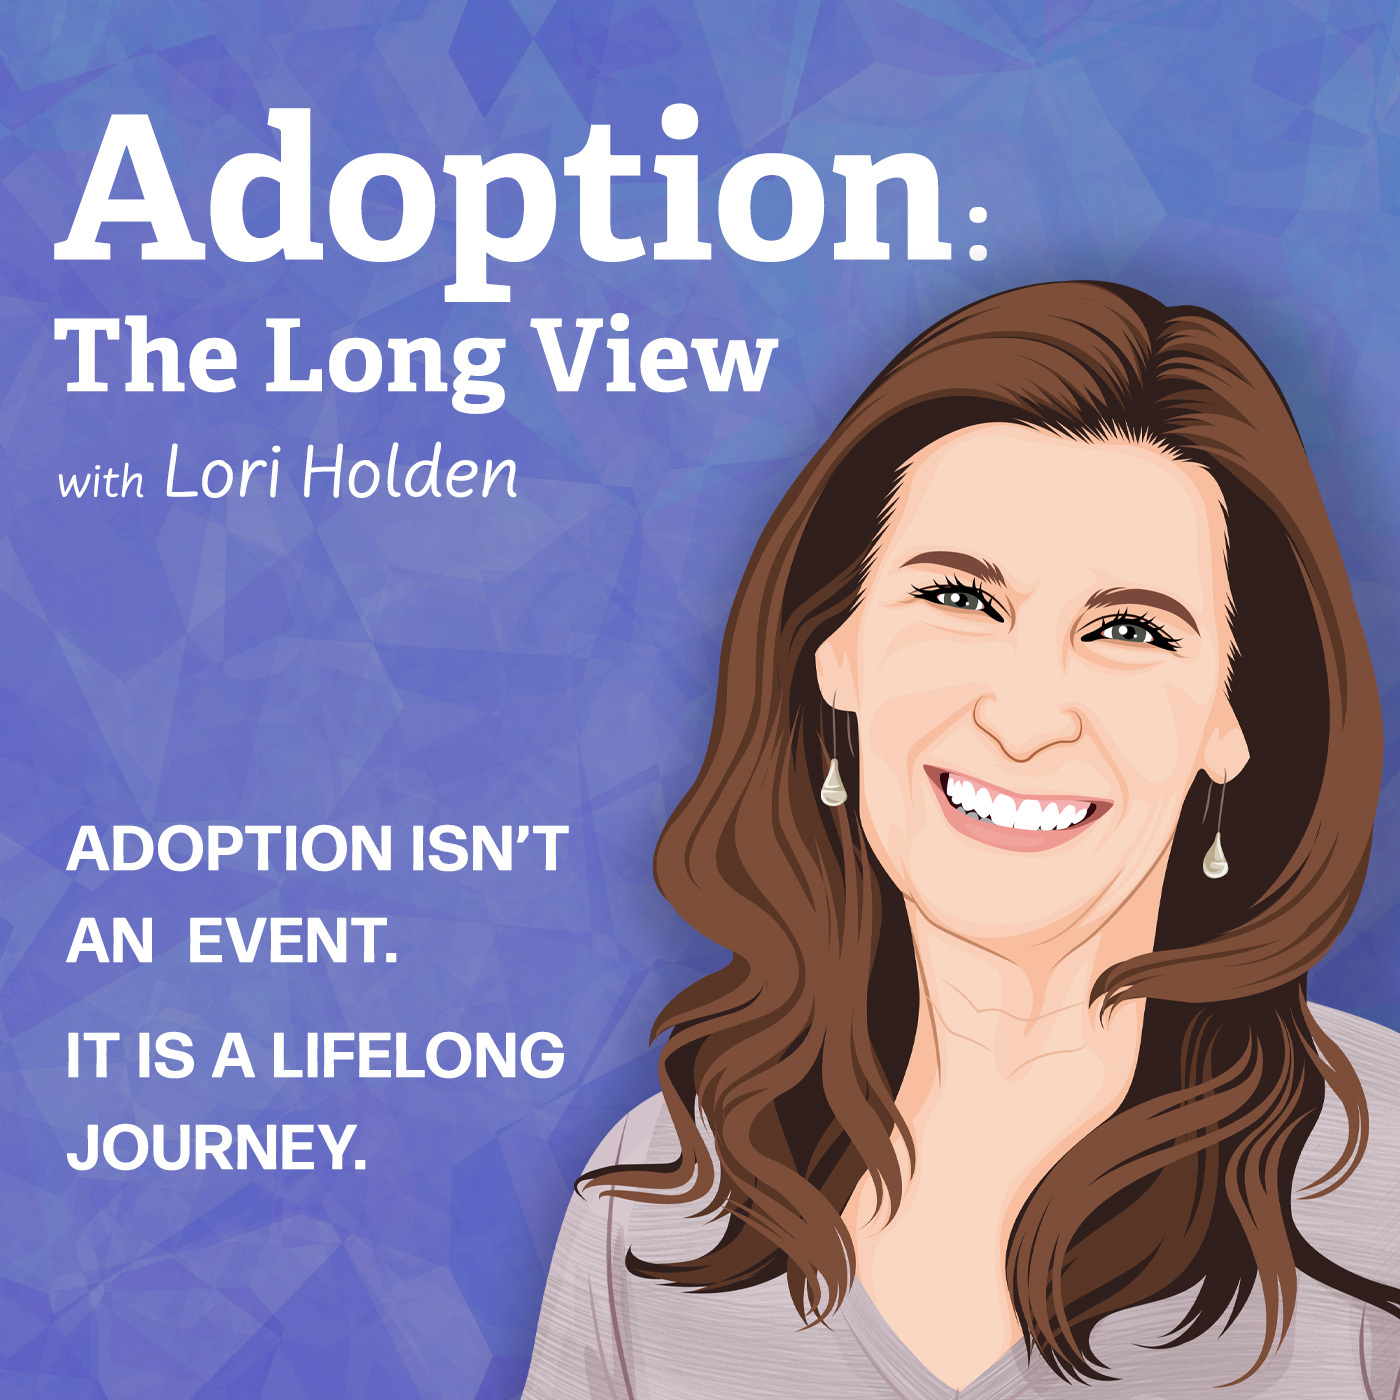 https://s3-us-west-2.amazonaws.com/cdn.adopting.com/site/adoption-the-long-view-cover-art.jpg